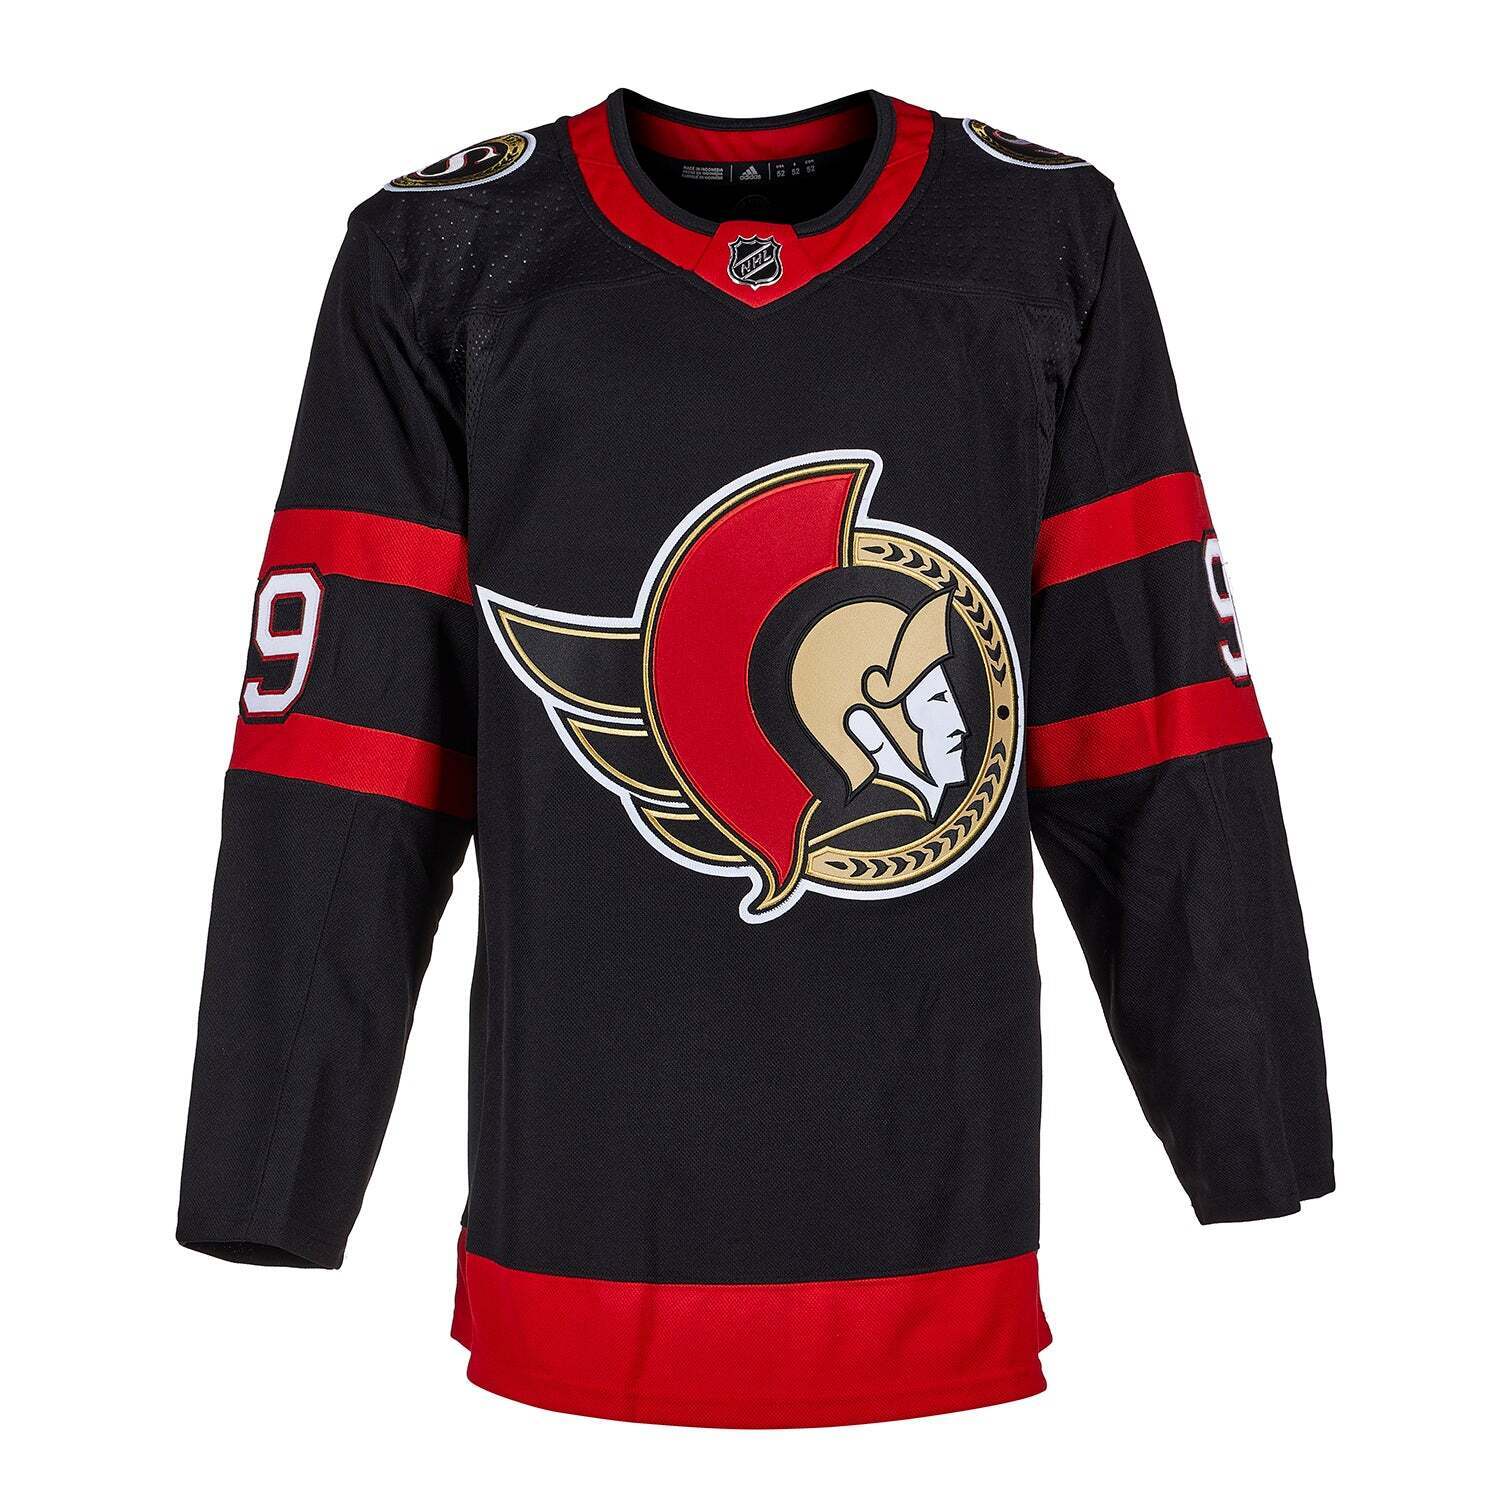 BOBBY RYAN Signed Ottawa Senators Black Adidas PRO Jersey - NHL